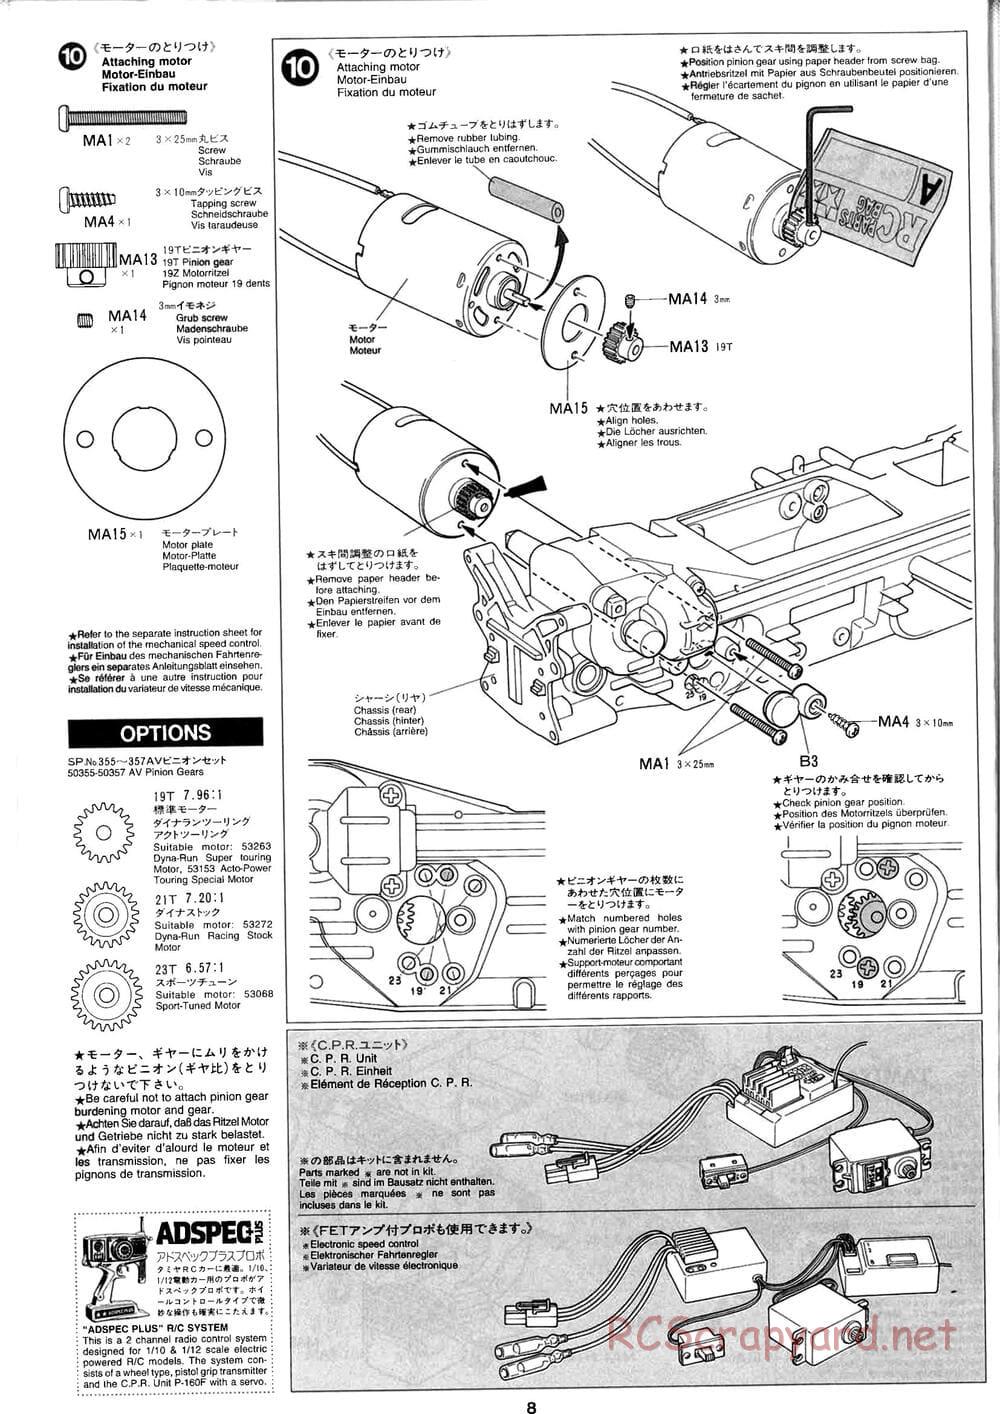 Tamiya - Baja Champ - TL-01B Chassis - Manual - Page 8